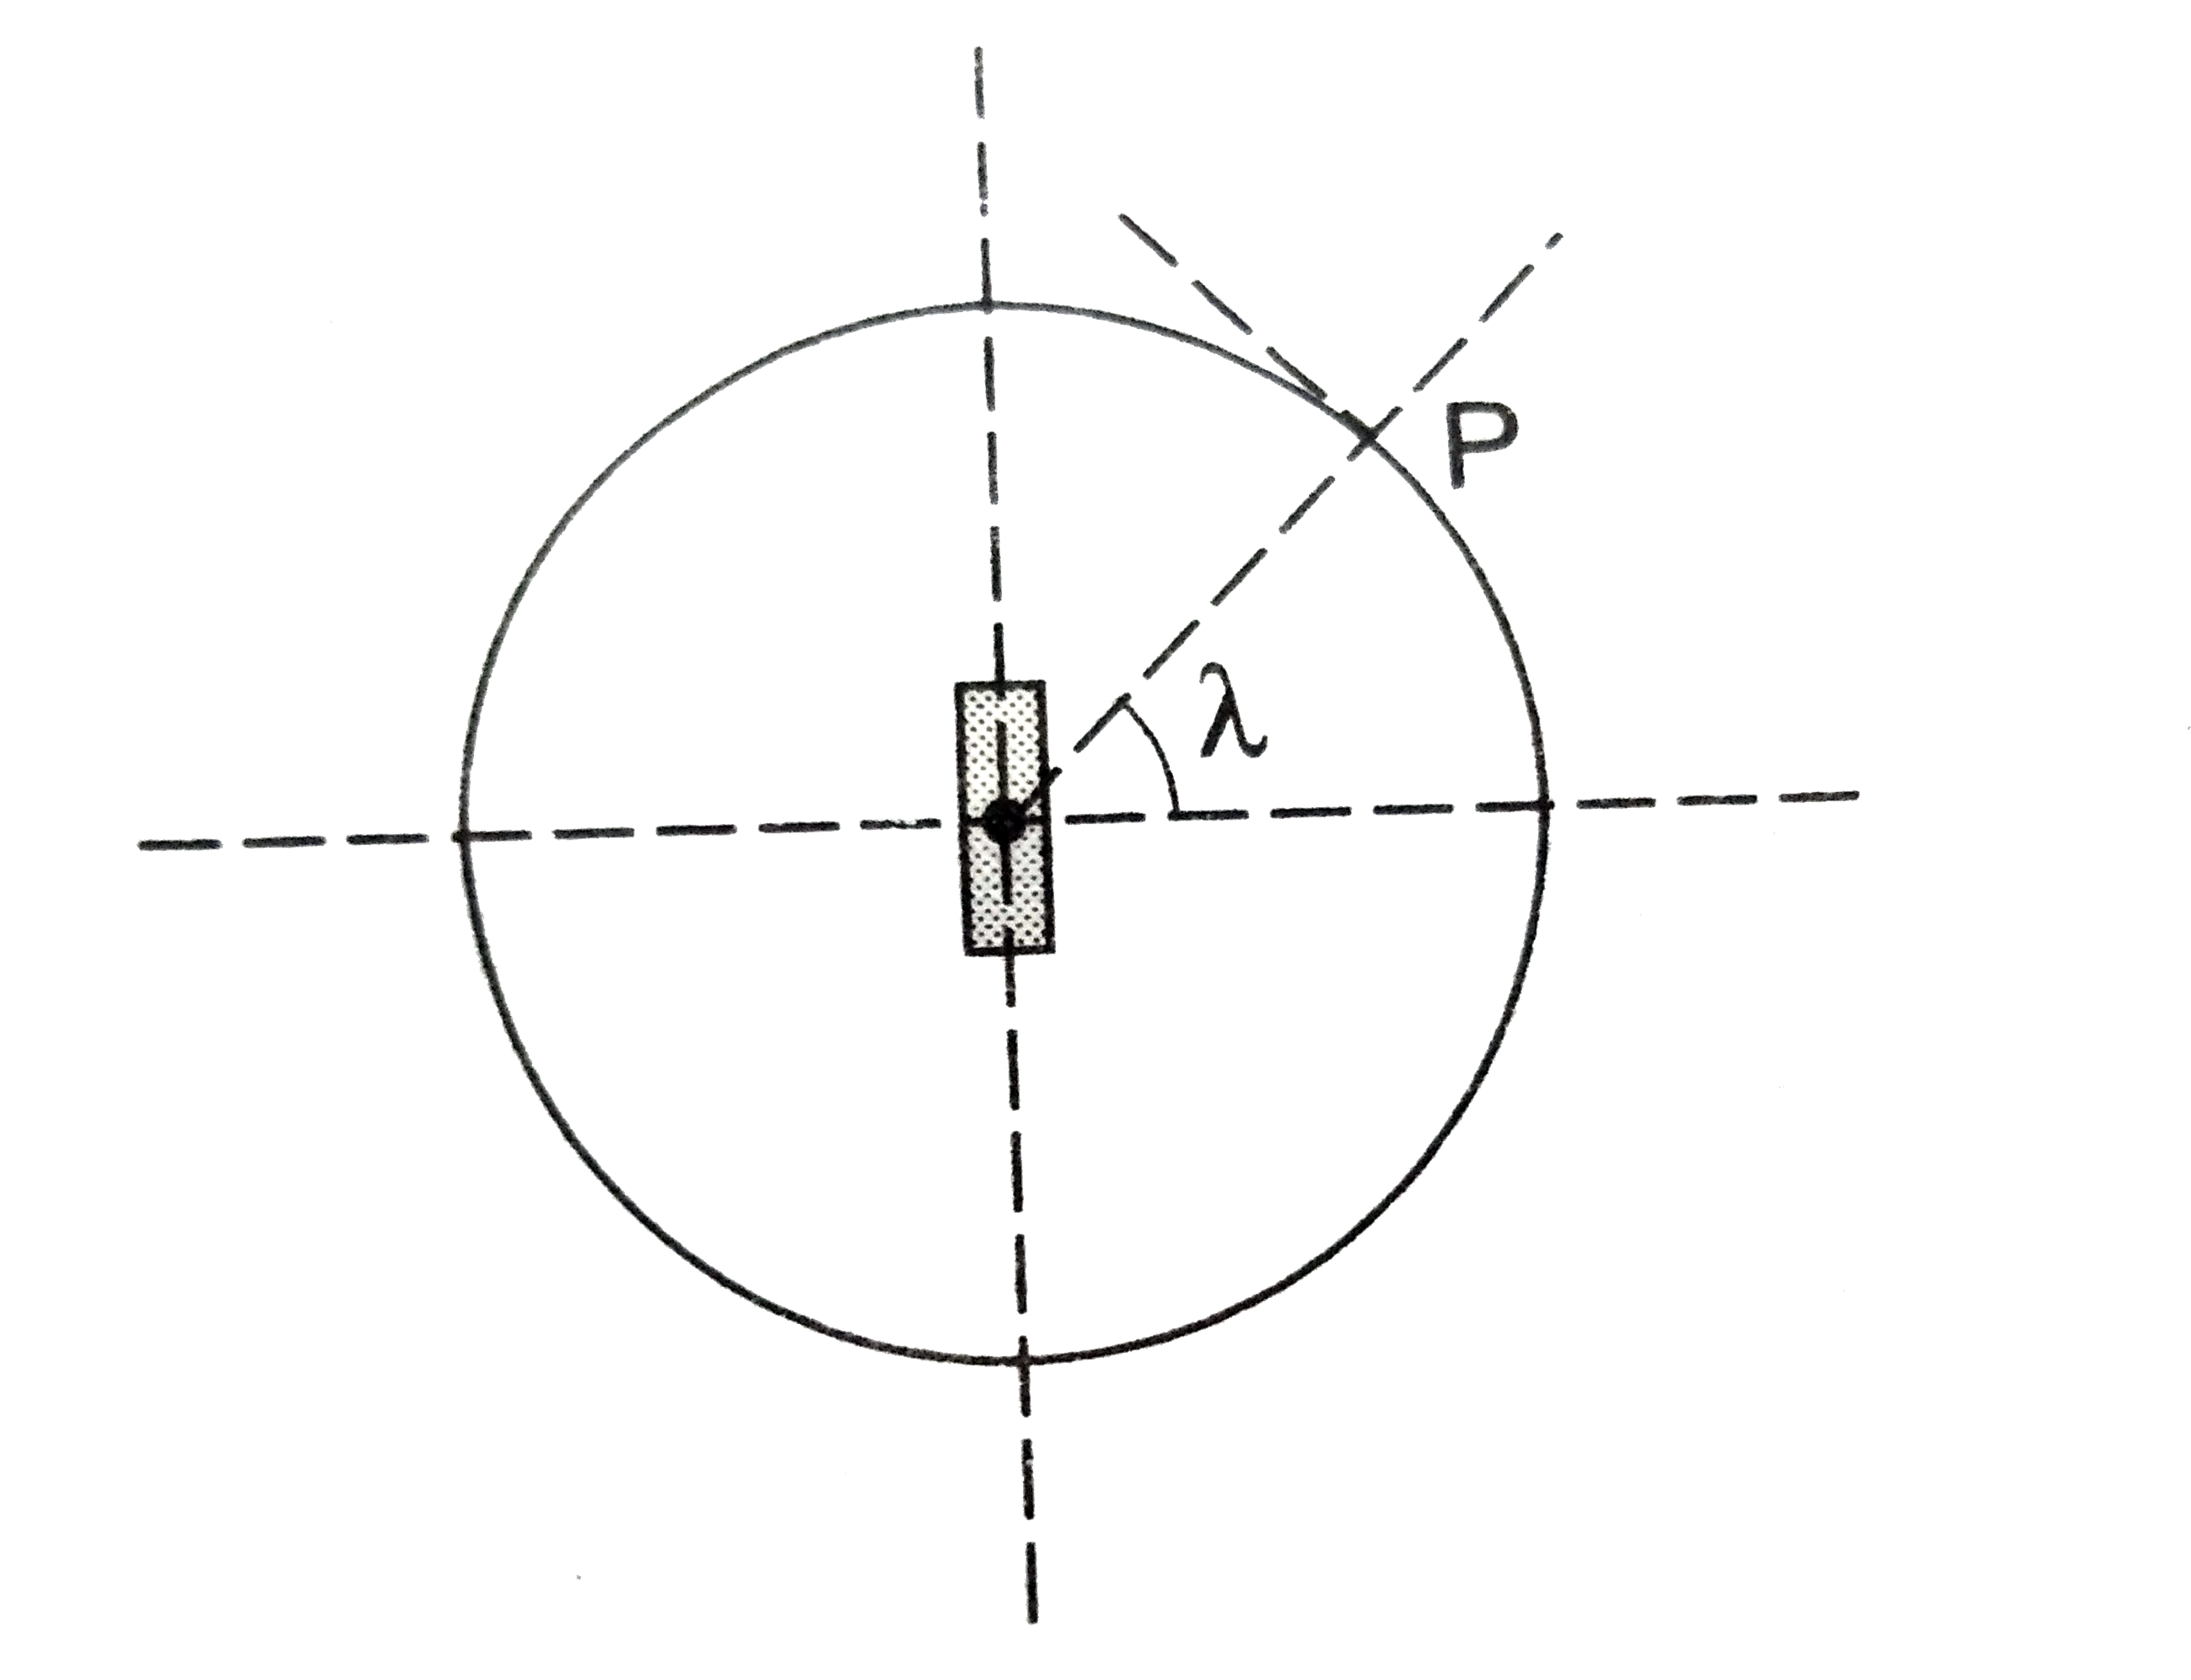 पार्थिव चुंबकत्व की व्याख्या के लिए एक काल्पनिक मॉडल प्रस्तुत किया जाता हैं जिसमें पृथ्वी के केंद्र पर स्थित m आघूर्ण का एक प्रबल चुंबक मान लेते हैं । अक्षांश (latitude) lamda के किसी स्थान  P पर नमन कोण का मान sigma प्रेक्षित होता हैं । पृथ्वी की त्रिज्या R मान लें ।      स्थान P पर पृथ्वी के चुंबकीय क्षेत्र के ऊर्ध्वाधर घटक B(v) के लिए संबंध हैं